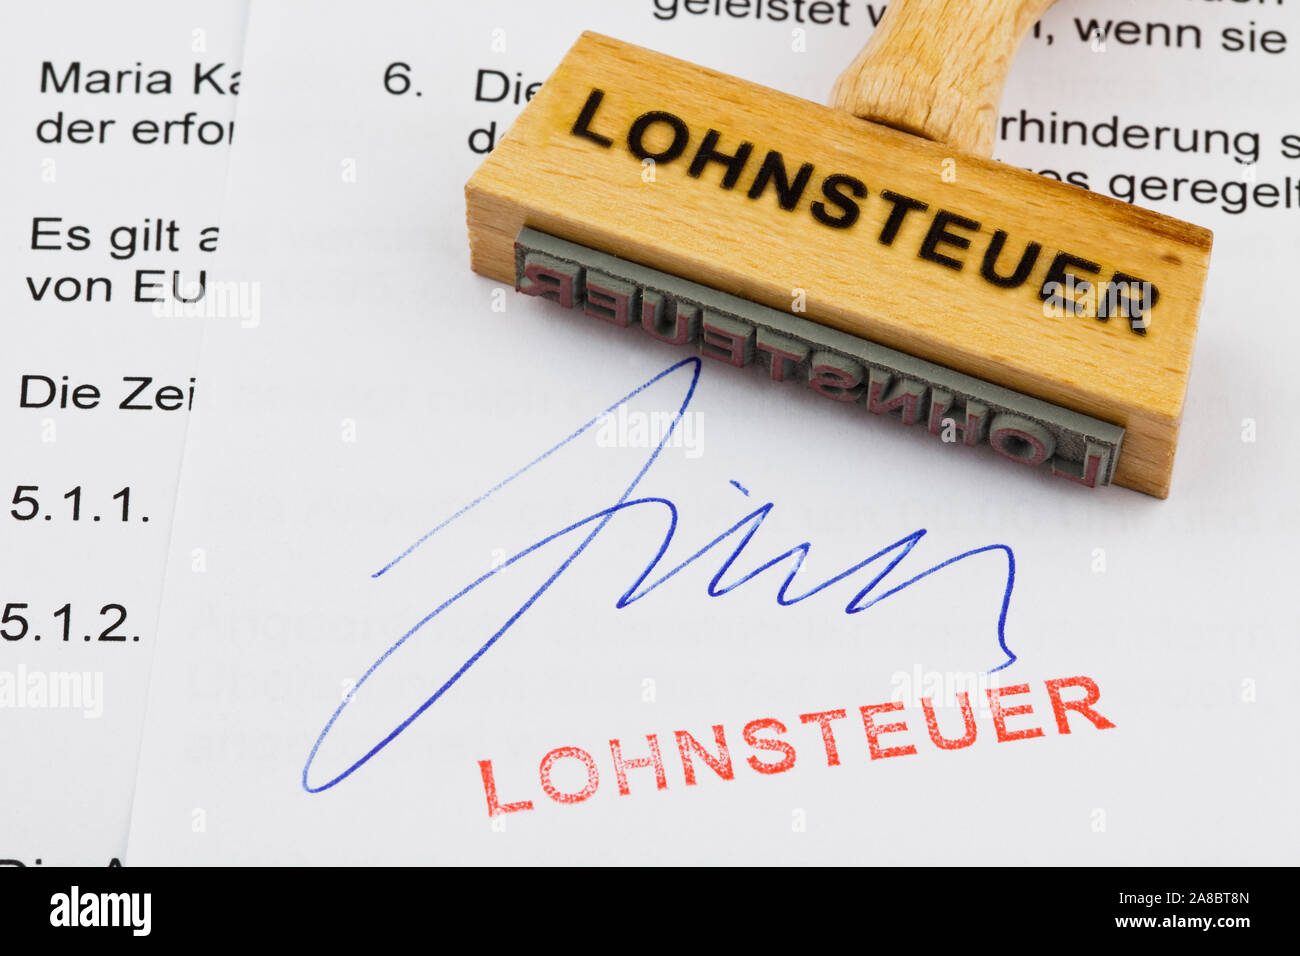 Holzstempel, Formulare im Hintergrund, Aufschrift: Lohnsteuer Stock Photo